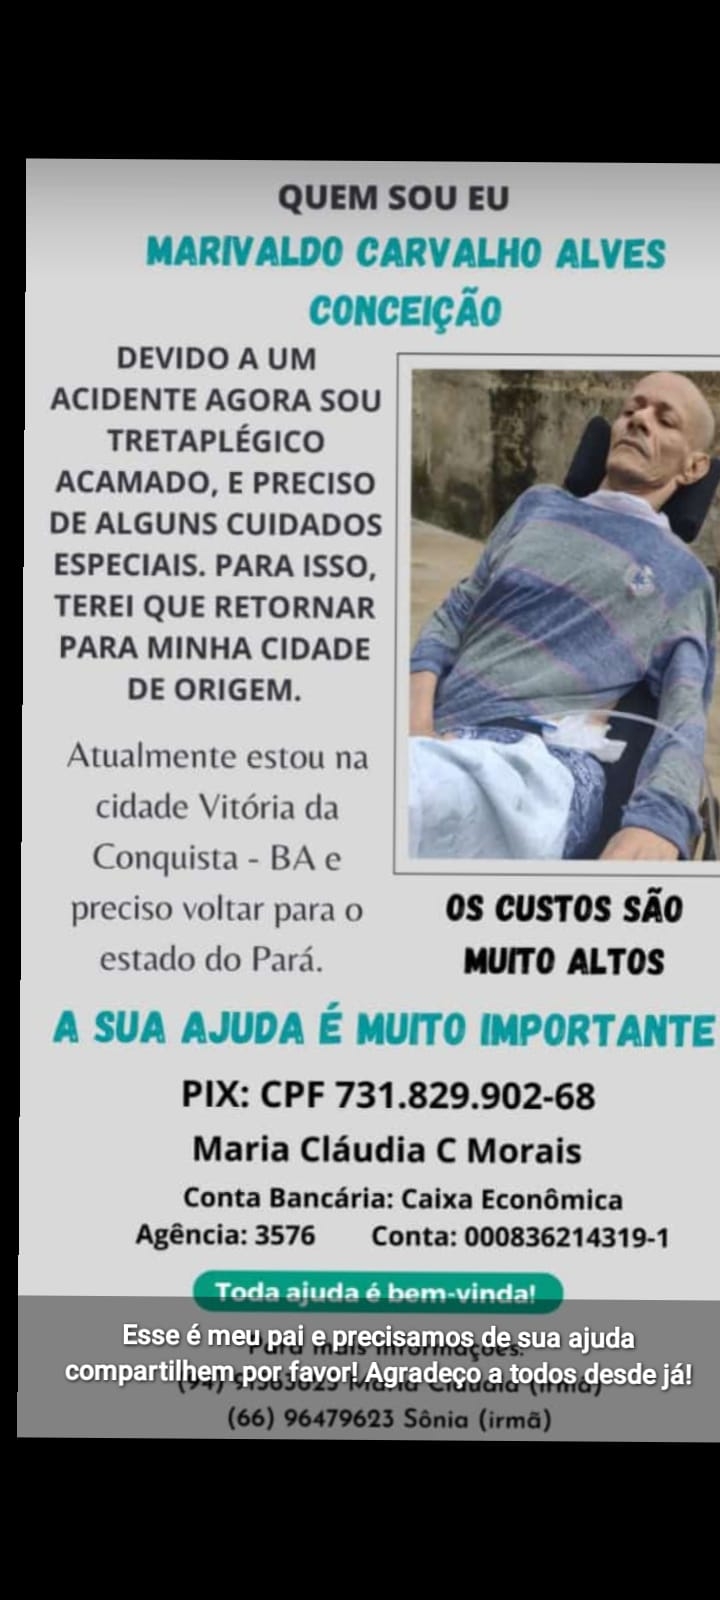 Vaquinha Online - Vamos ajudar marivaldo carvalho Alves conceicao